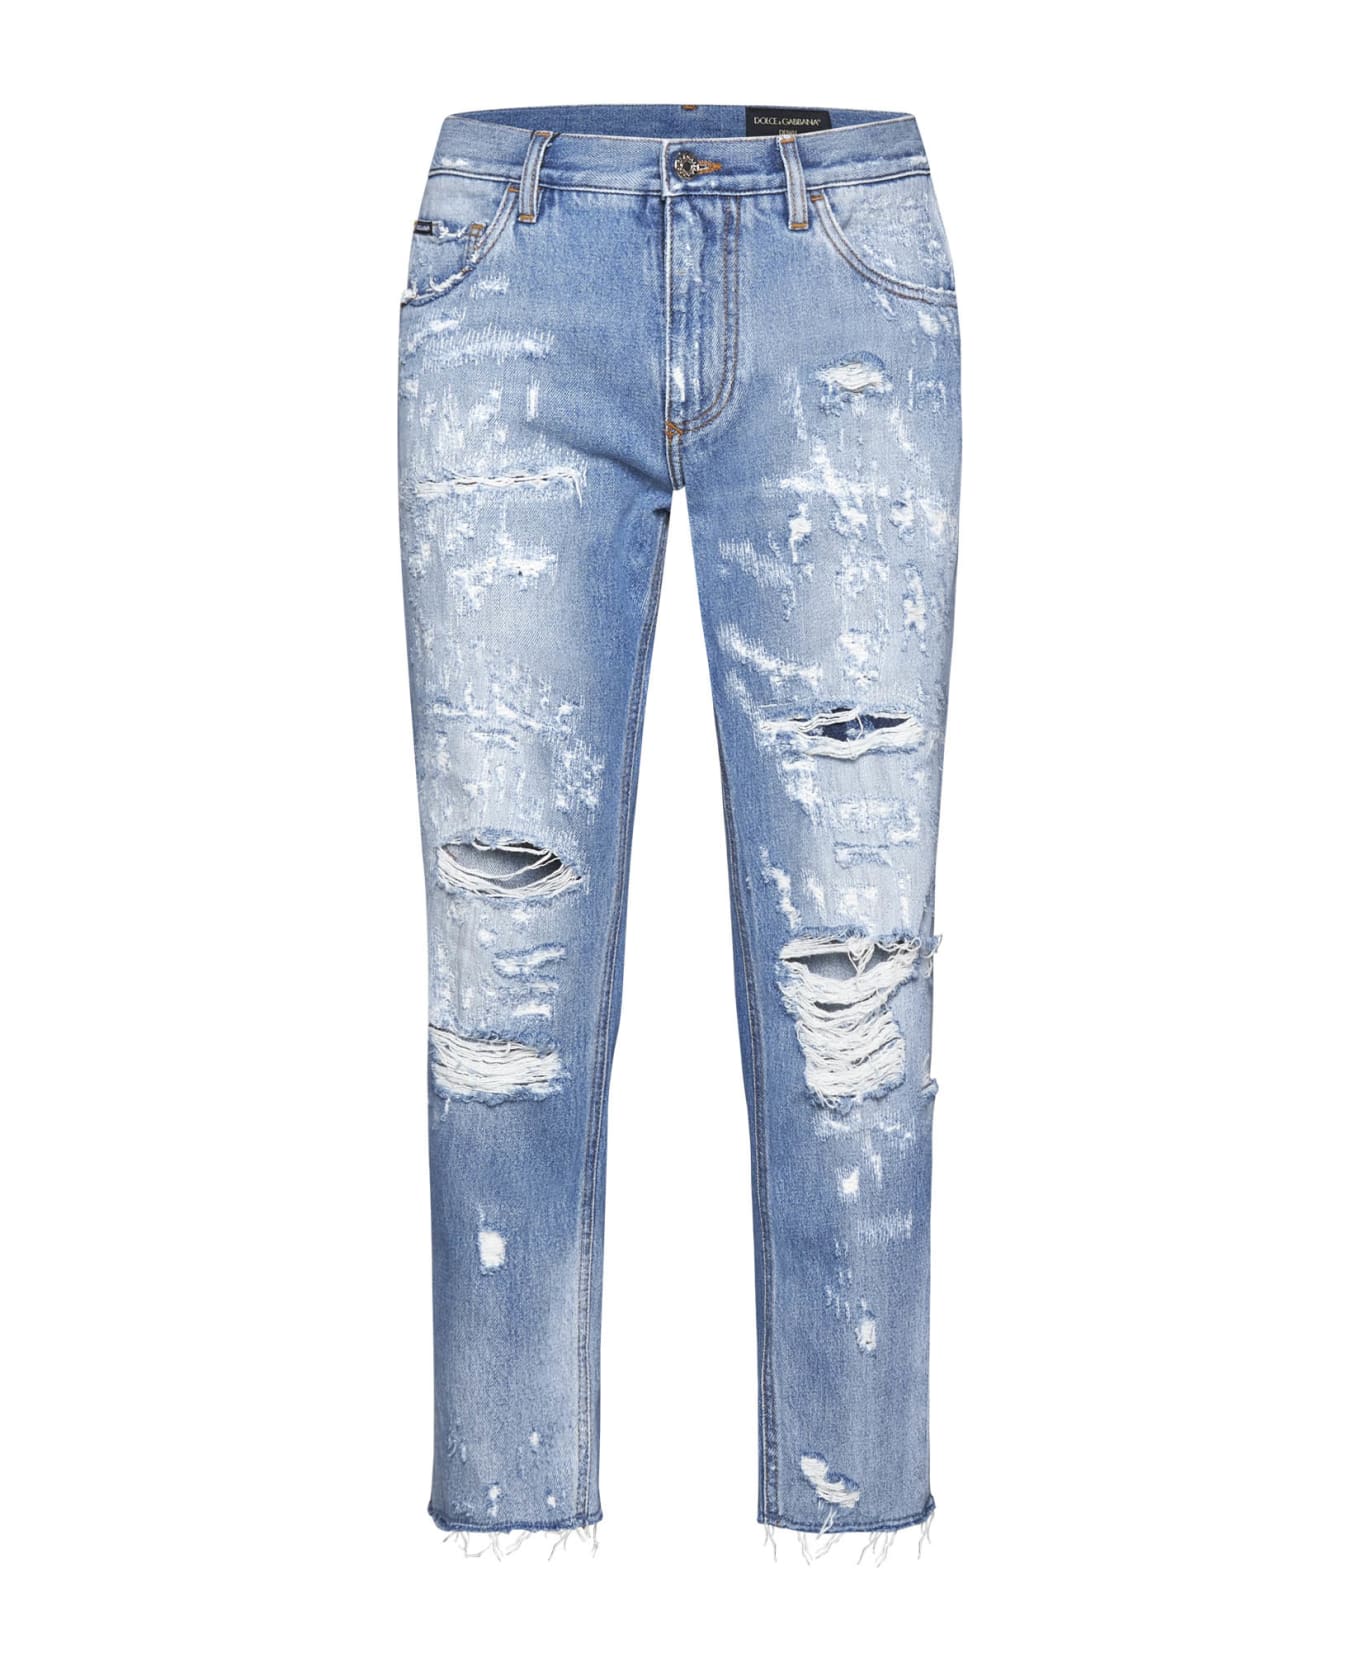 Dolce & Gabbana Loose Fit Jeans In Destroyed Denim - Denim